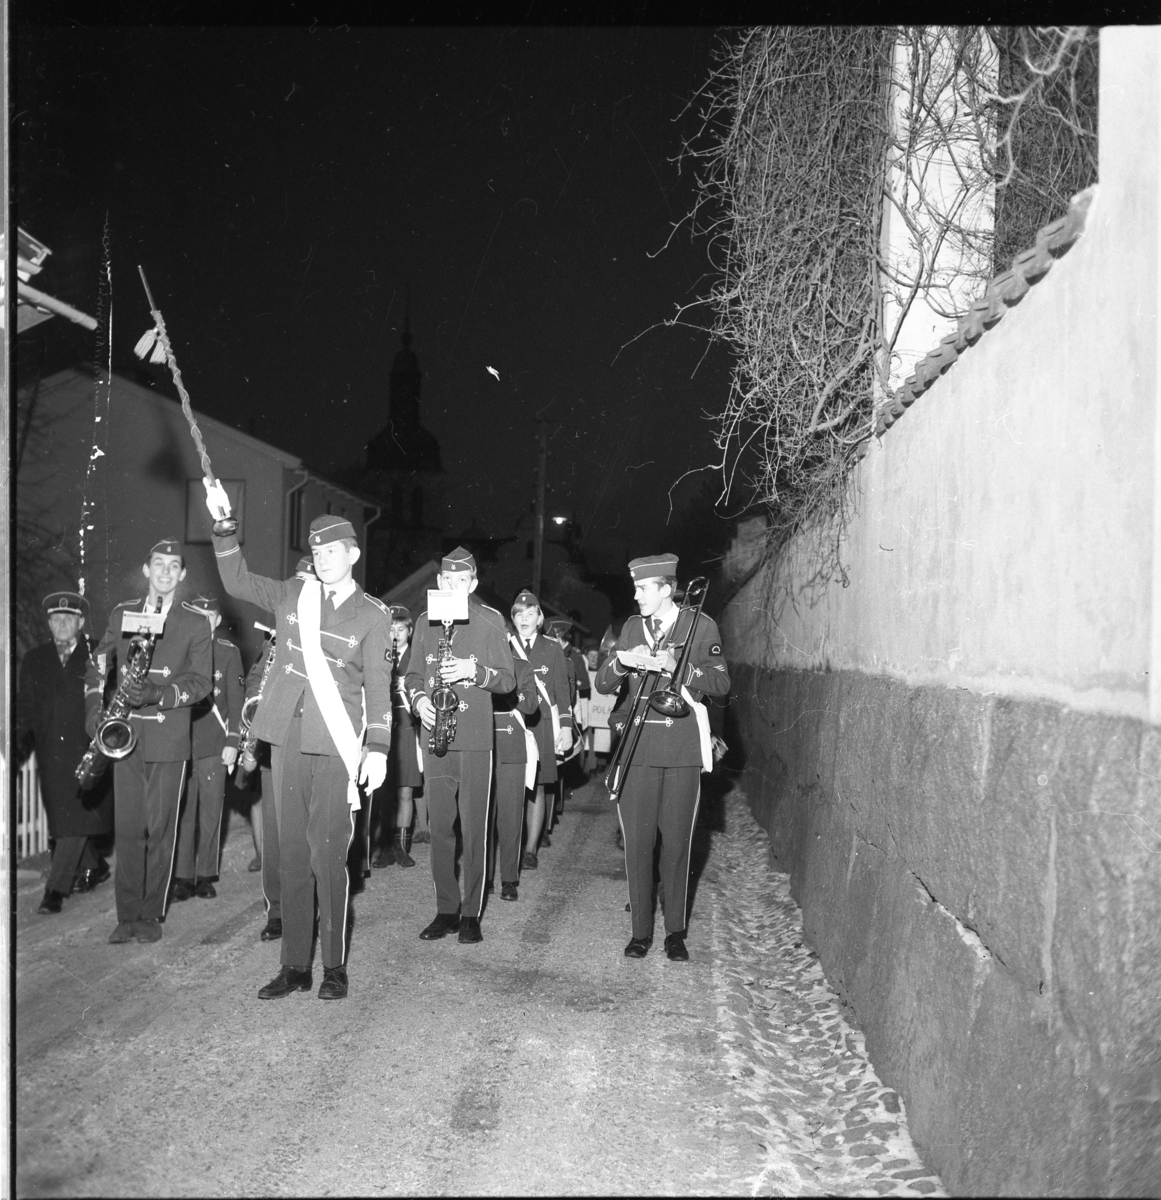 Okänd musikkår marscherar och spelar på Bergsgatan i Gränna, mellan kyrkan och Södra parken, i samband med Lucia 1963.